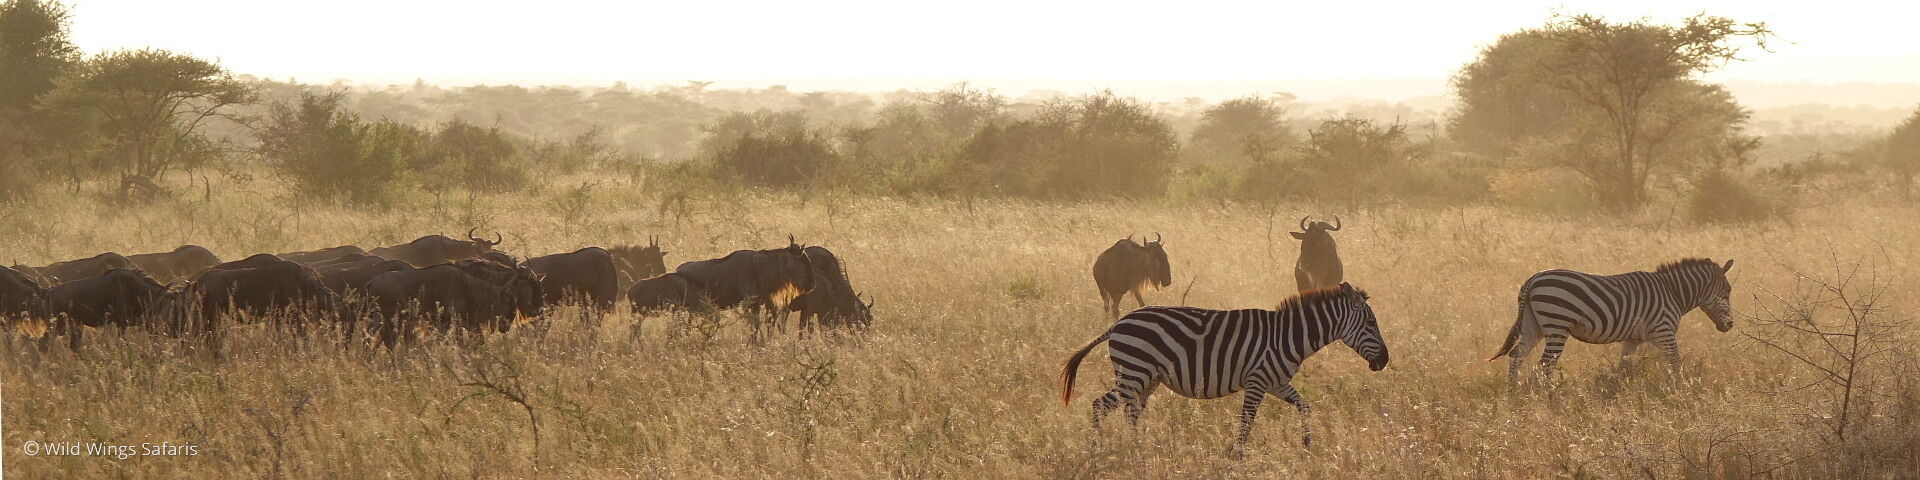 Kenya Conservancy Safari